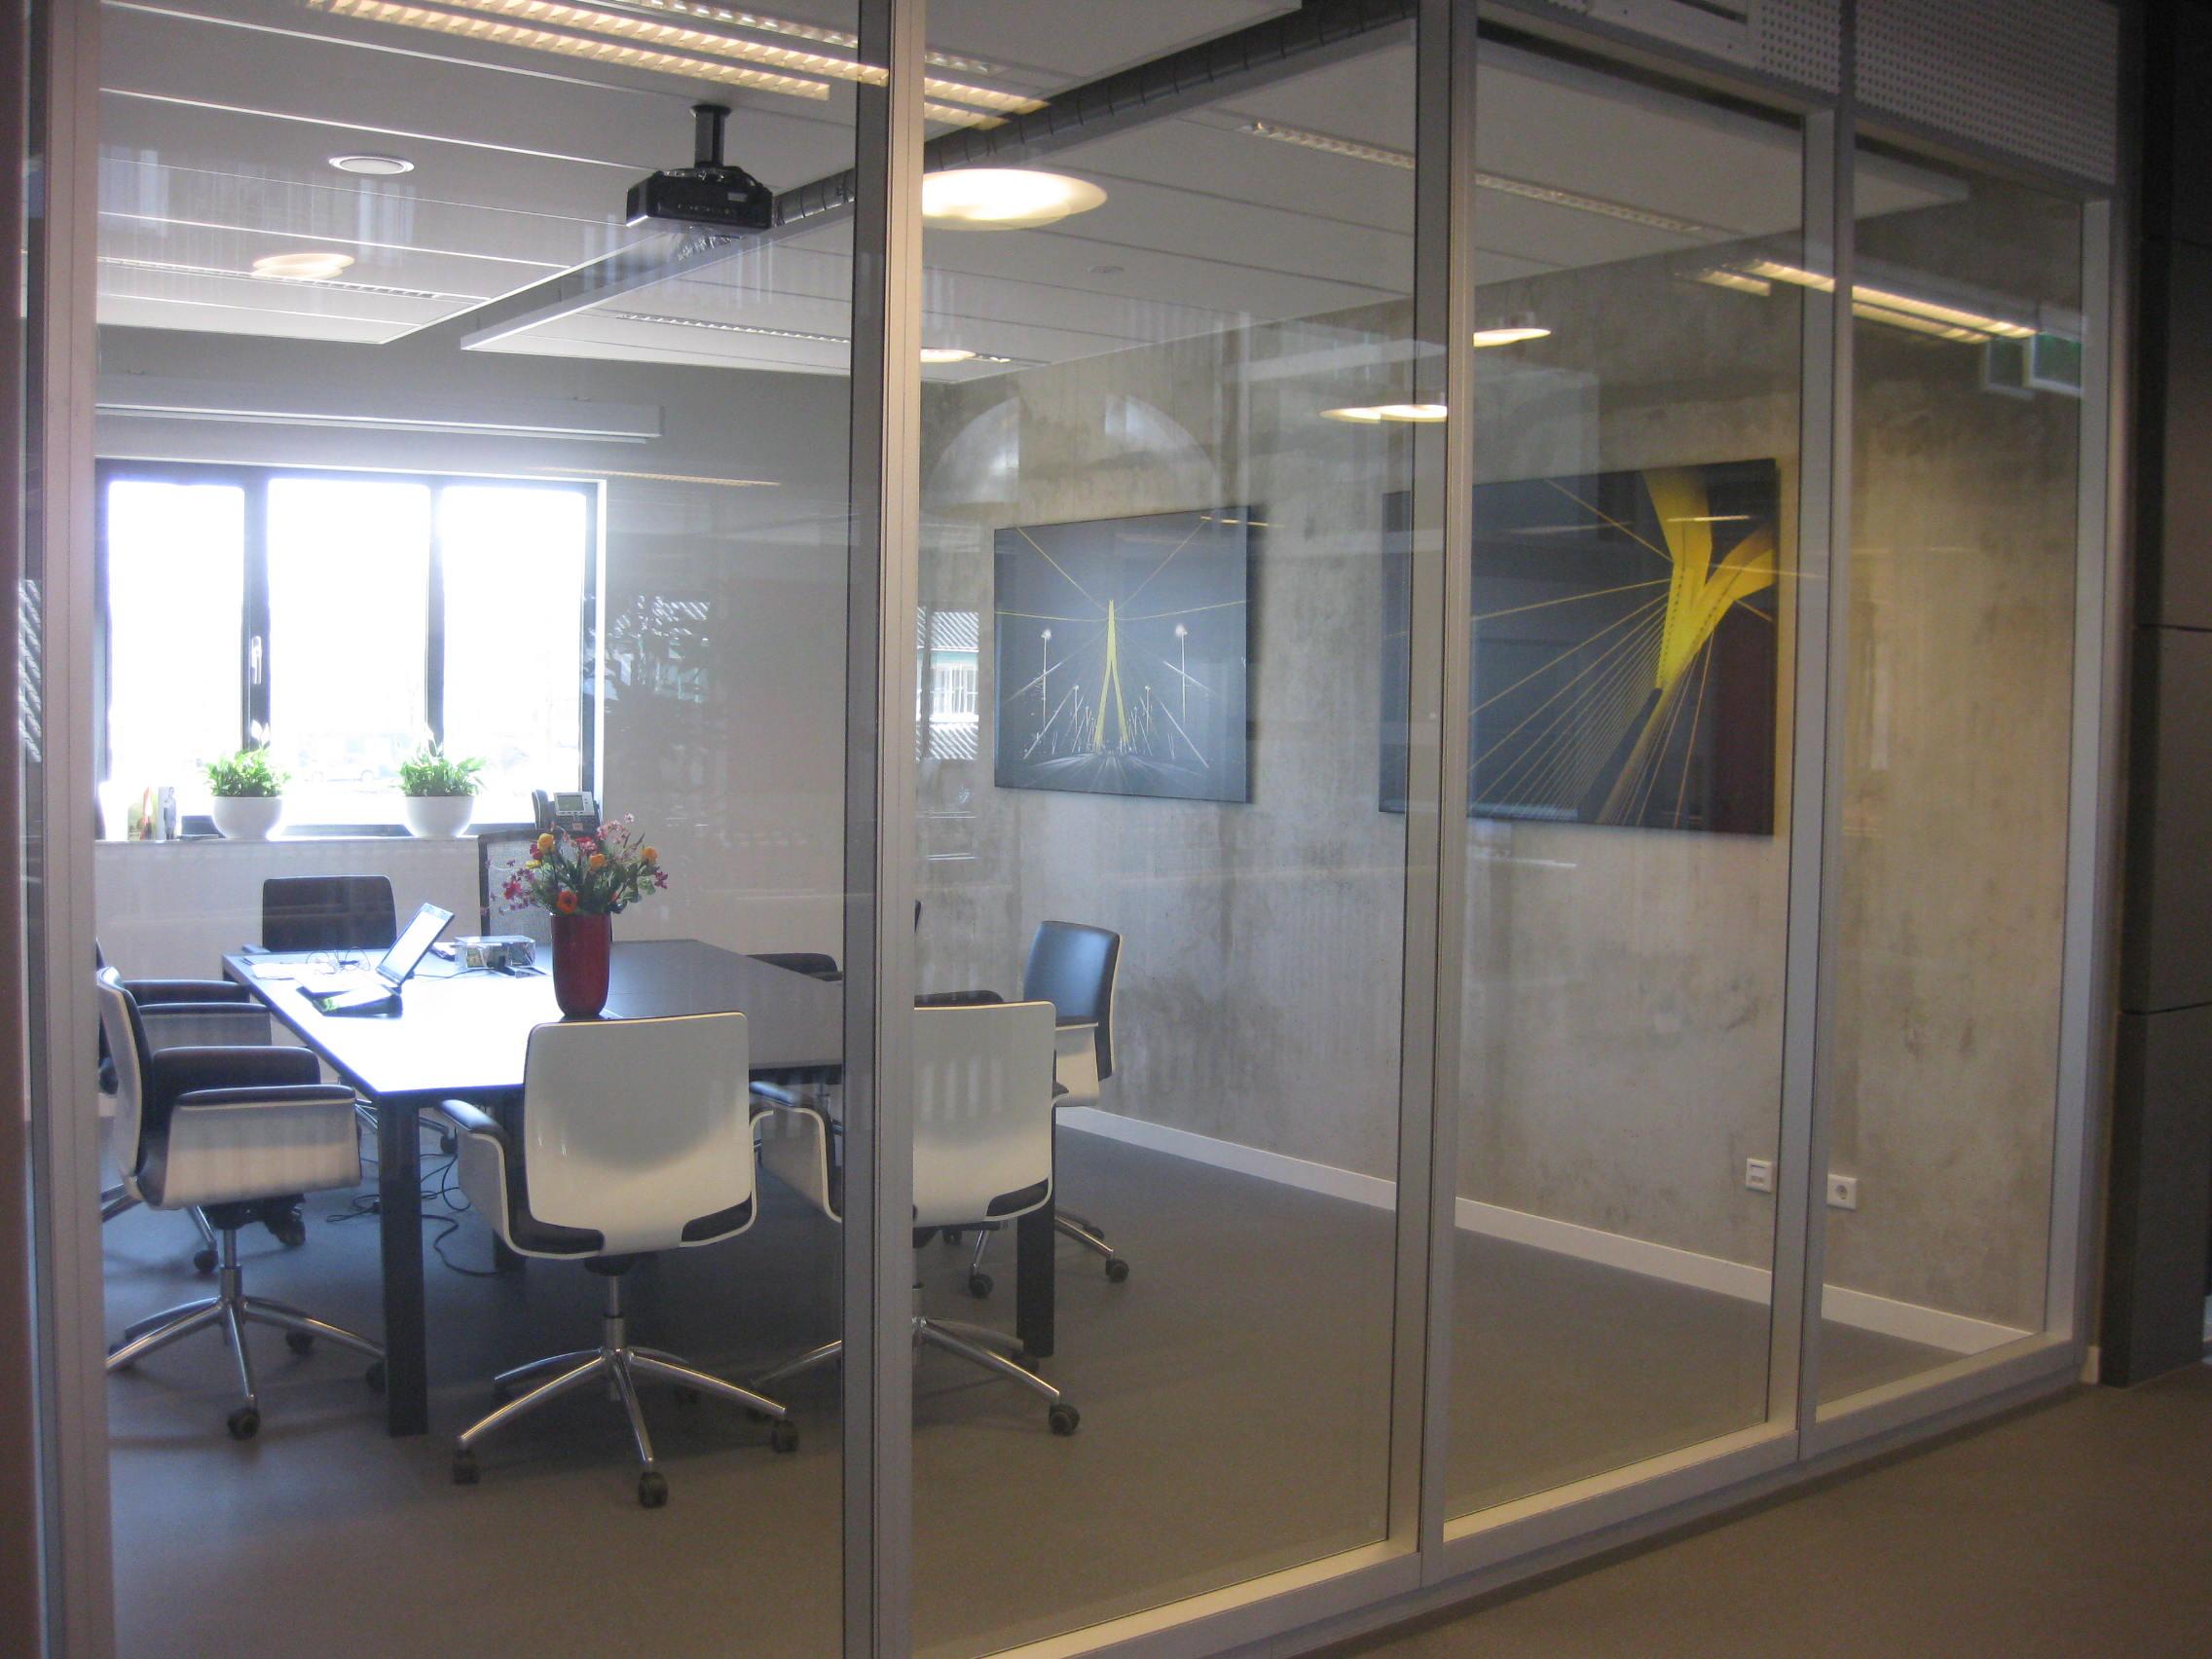 Modernes Büro. Glas und Sichtbeton. #büro #arbeitsecke ©OhMyPrints